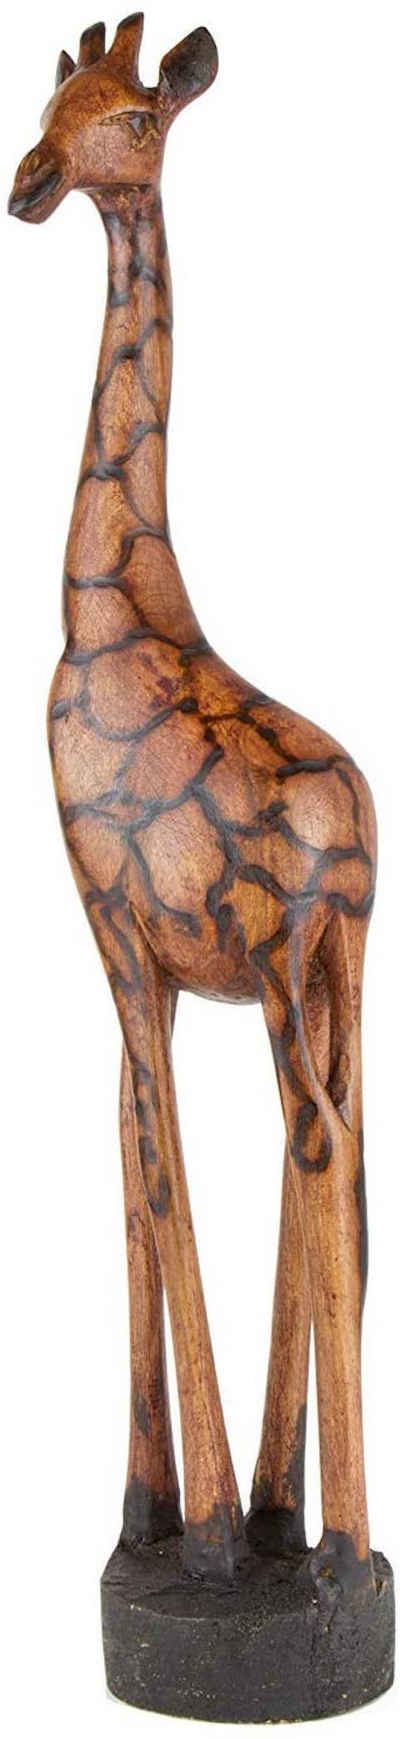 Afrika-Deko Afrikafigur »Samia«, in Verschiedene Größen Handarbeit aus SIMBABWE sehr hochwertige Holz Giraffe Figur Holzfigur